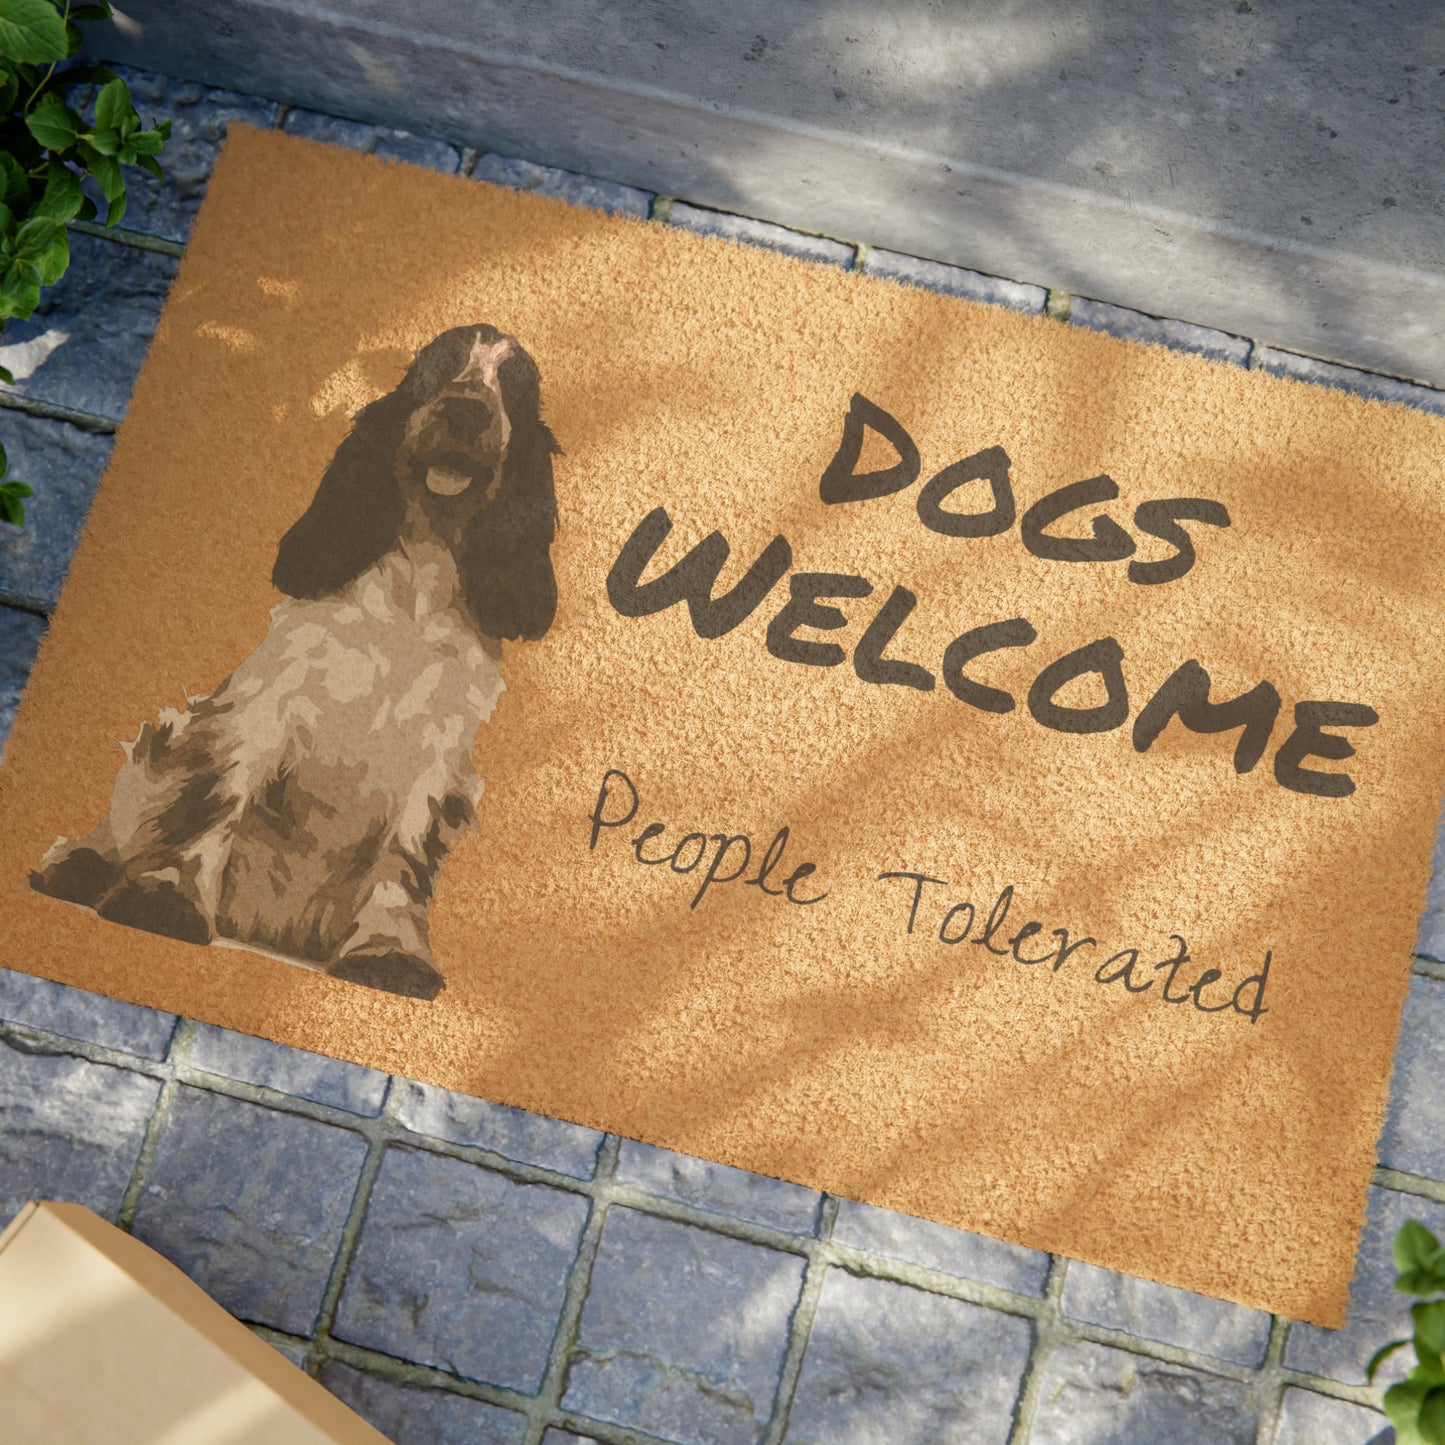 DOGS WELCOME Doormat